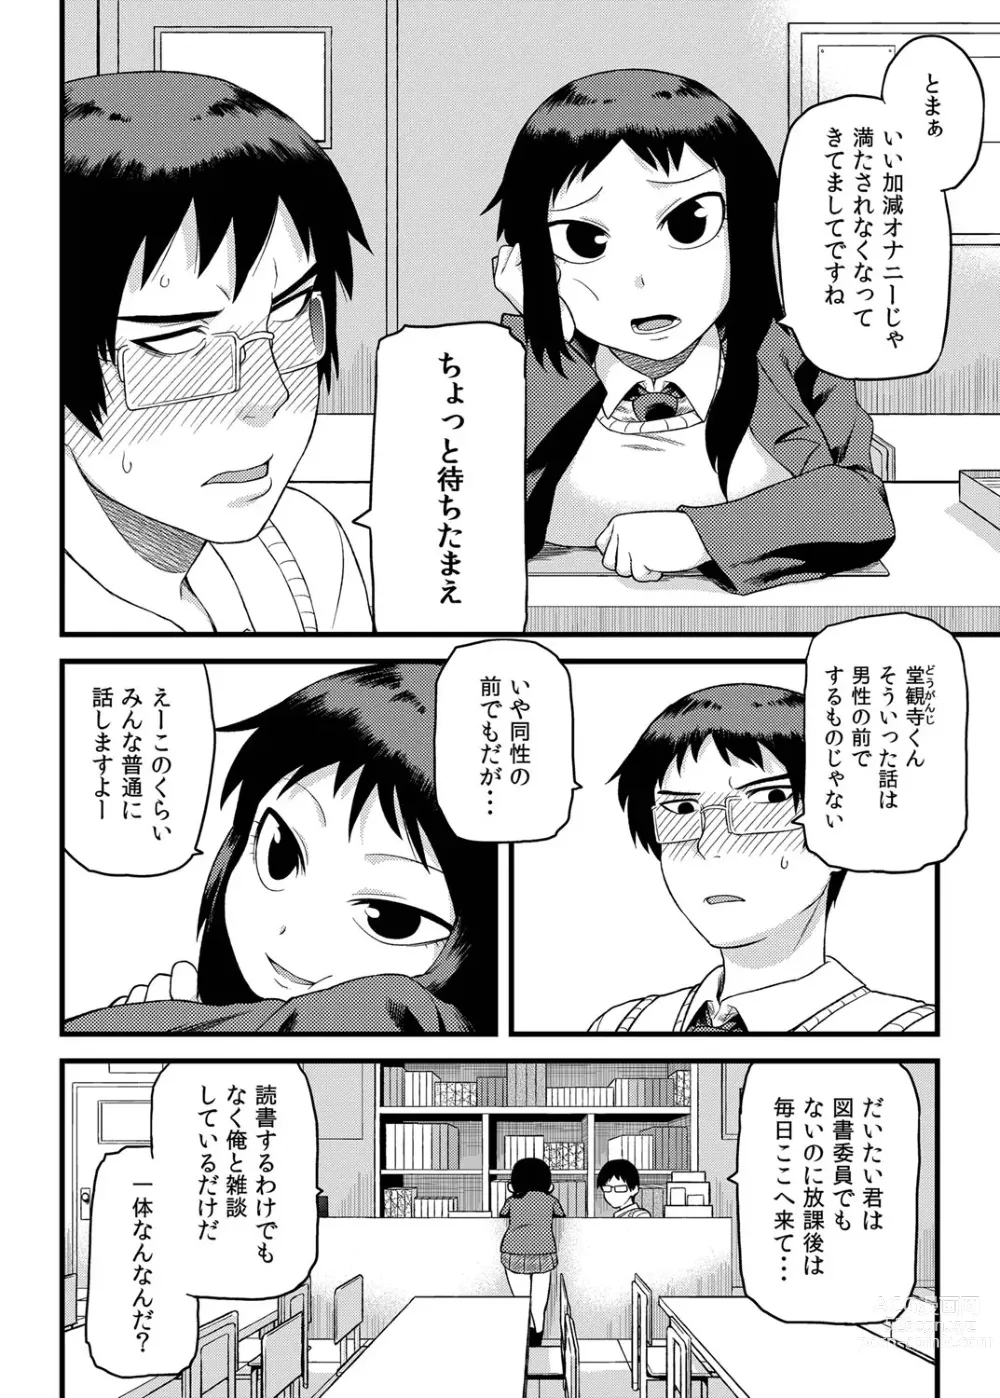 Page 3 of manga Toshoshitsu no Senpai to.